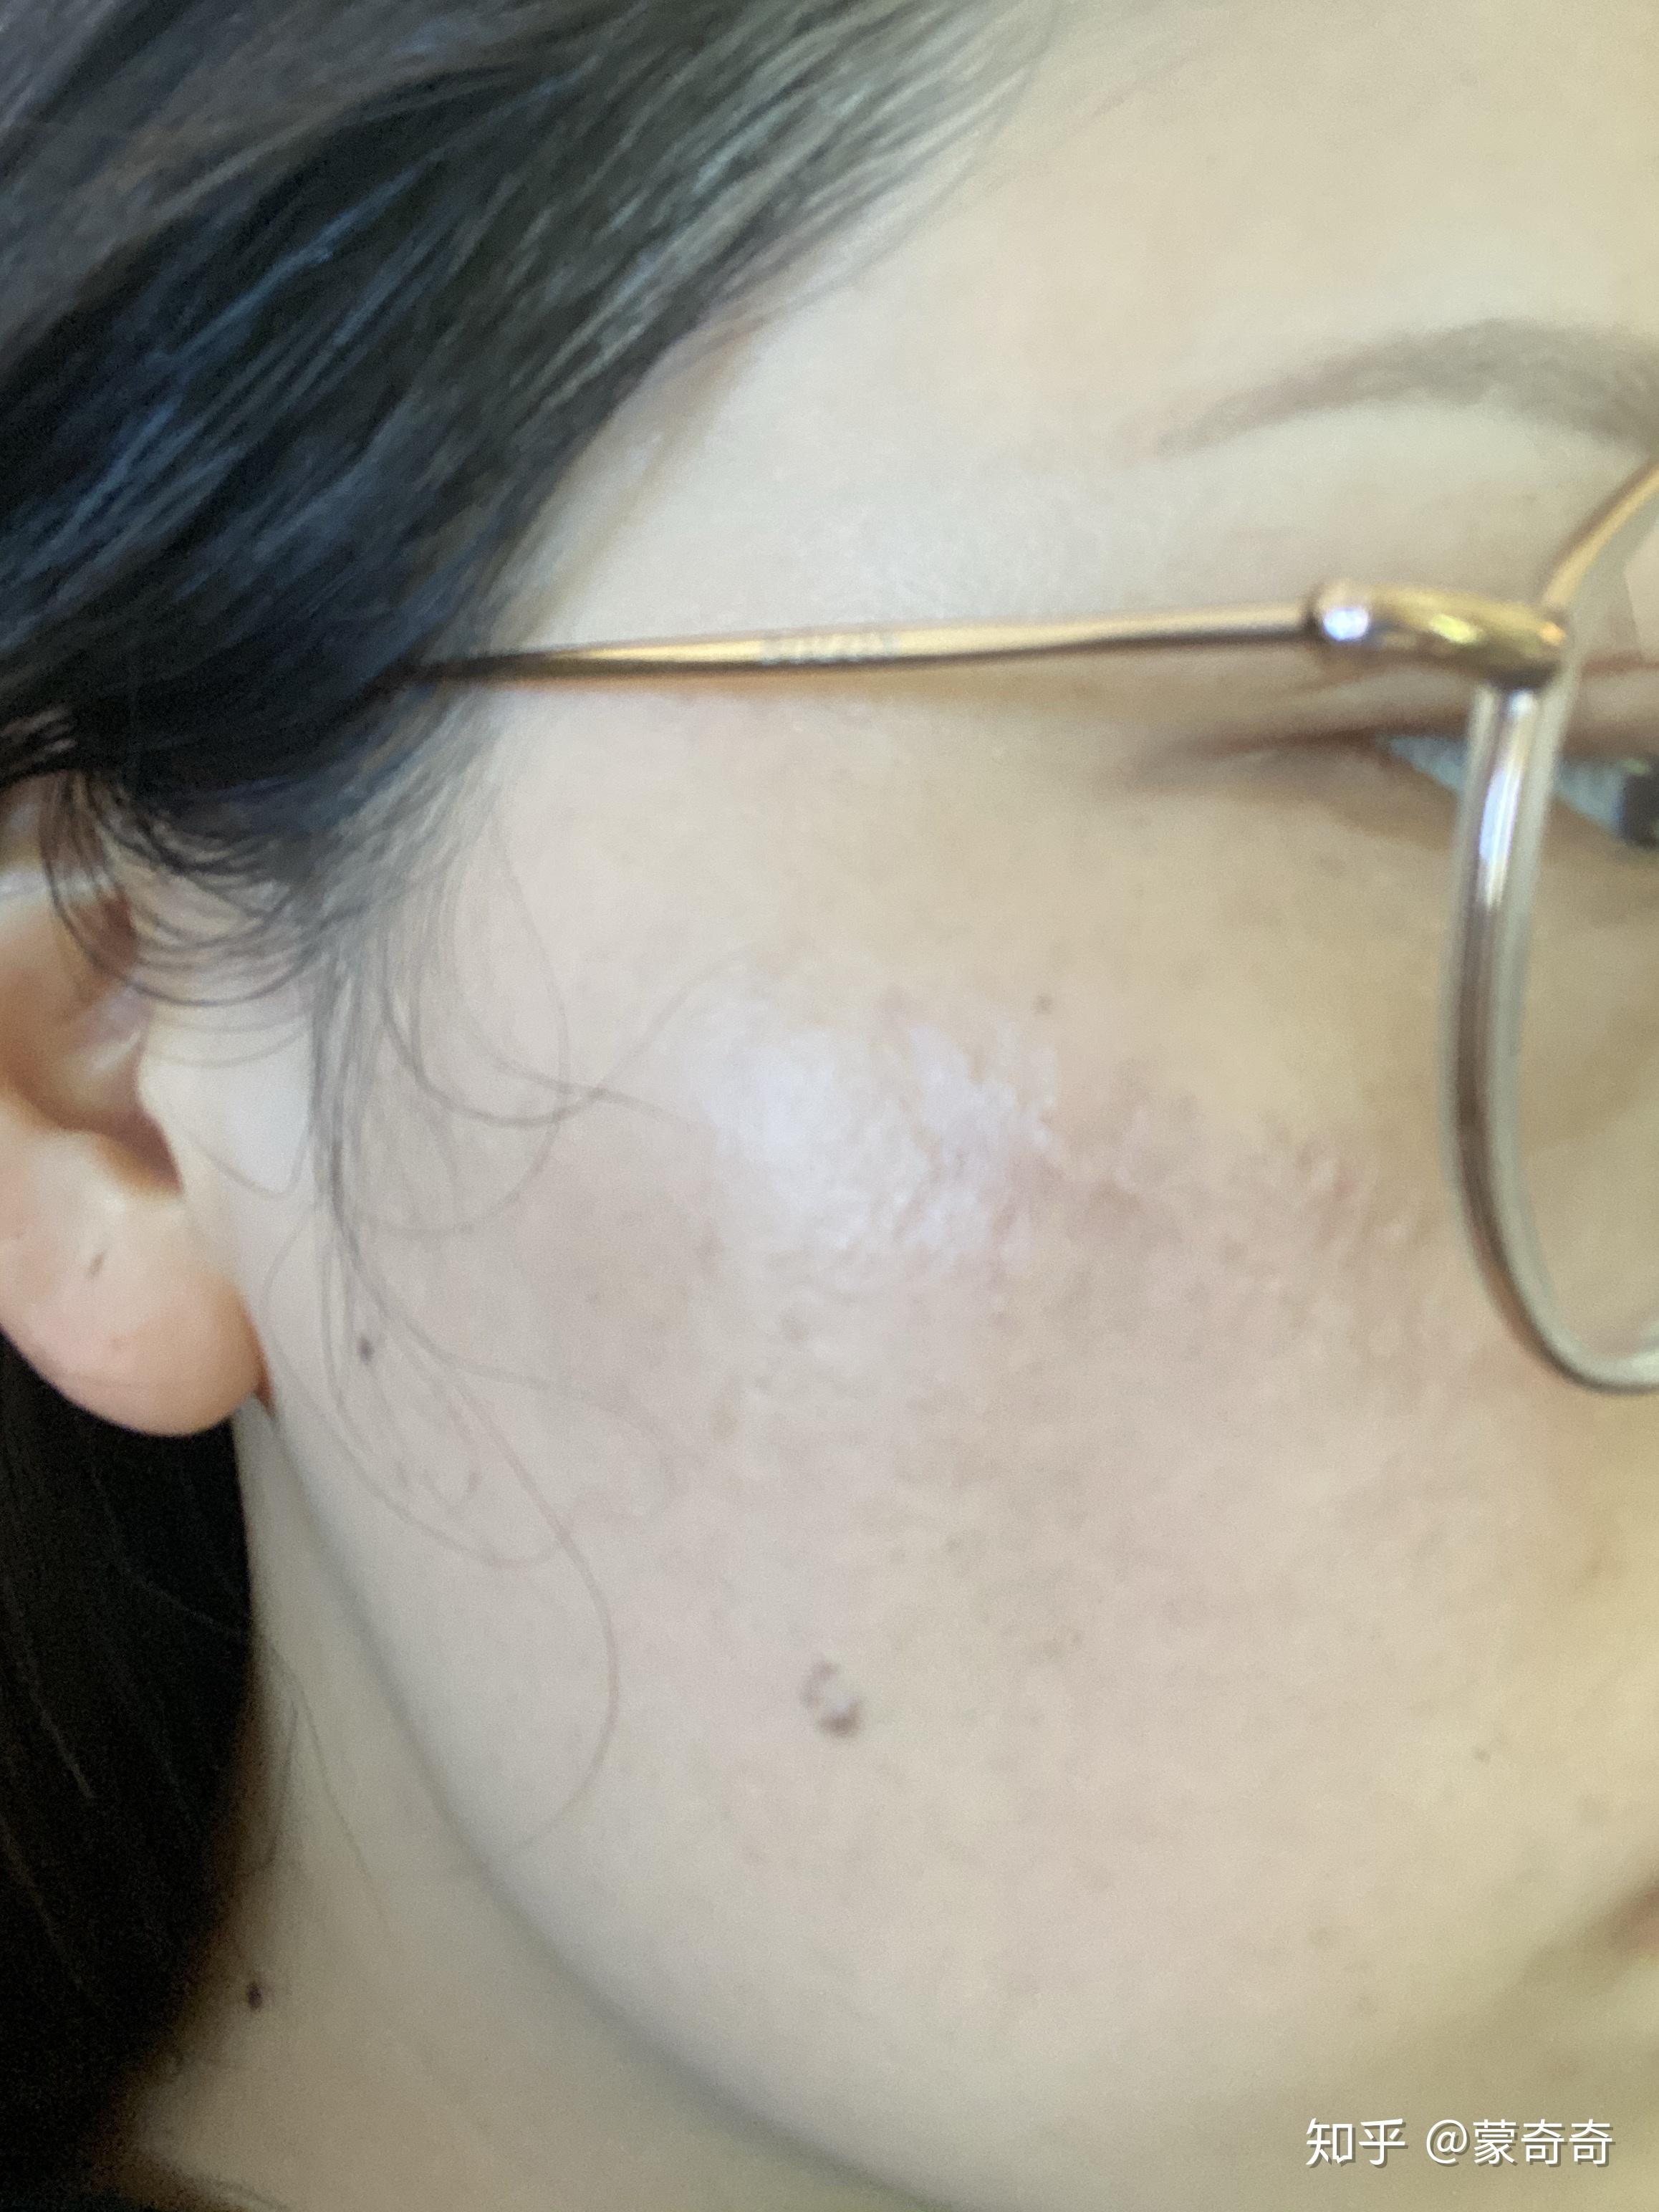 面部疤痕色素沉淀怎么消除 能用激光去除吗？ | 说明书网